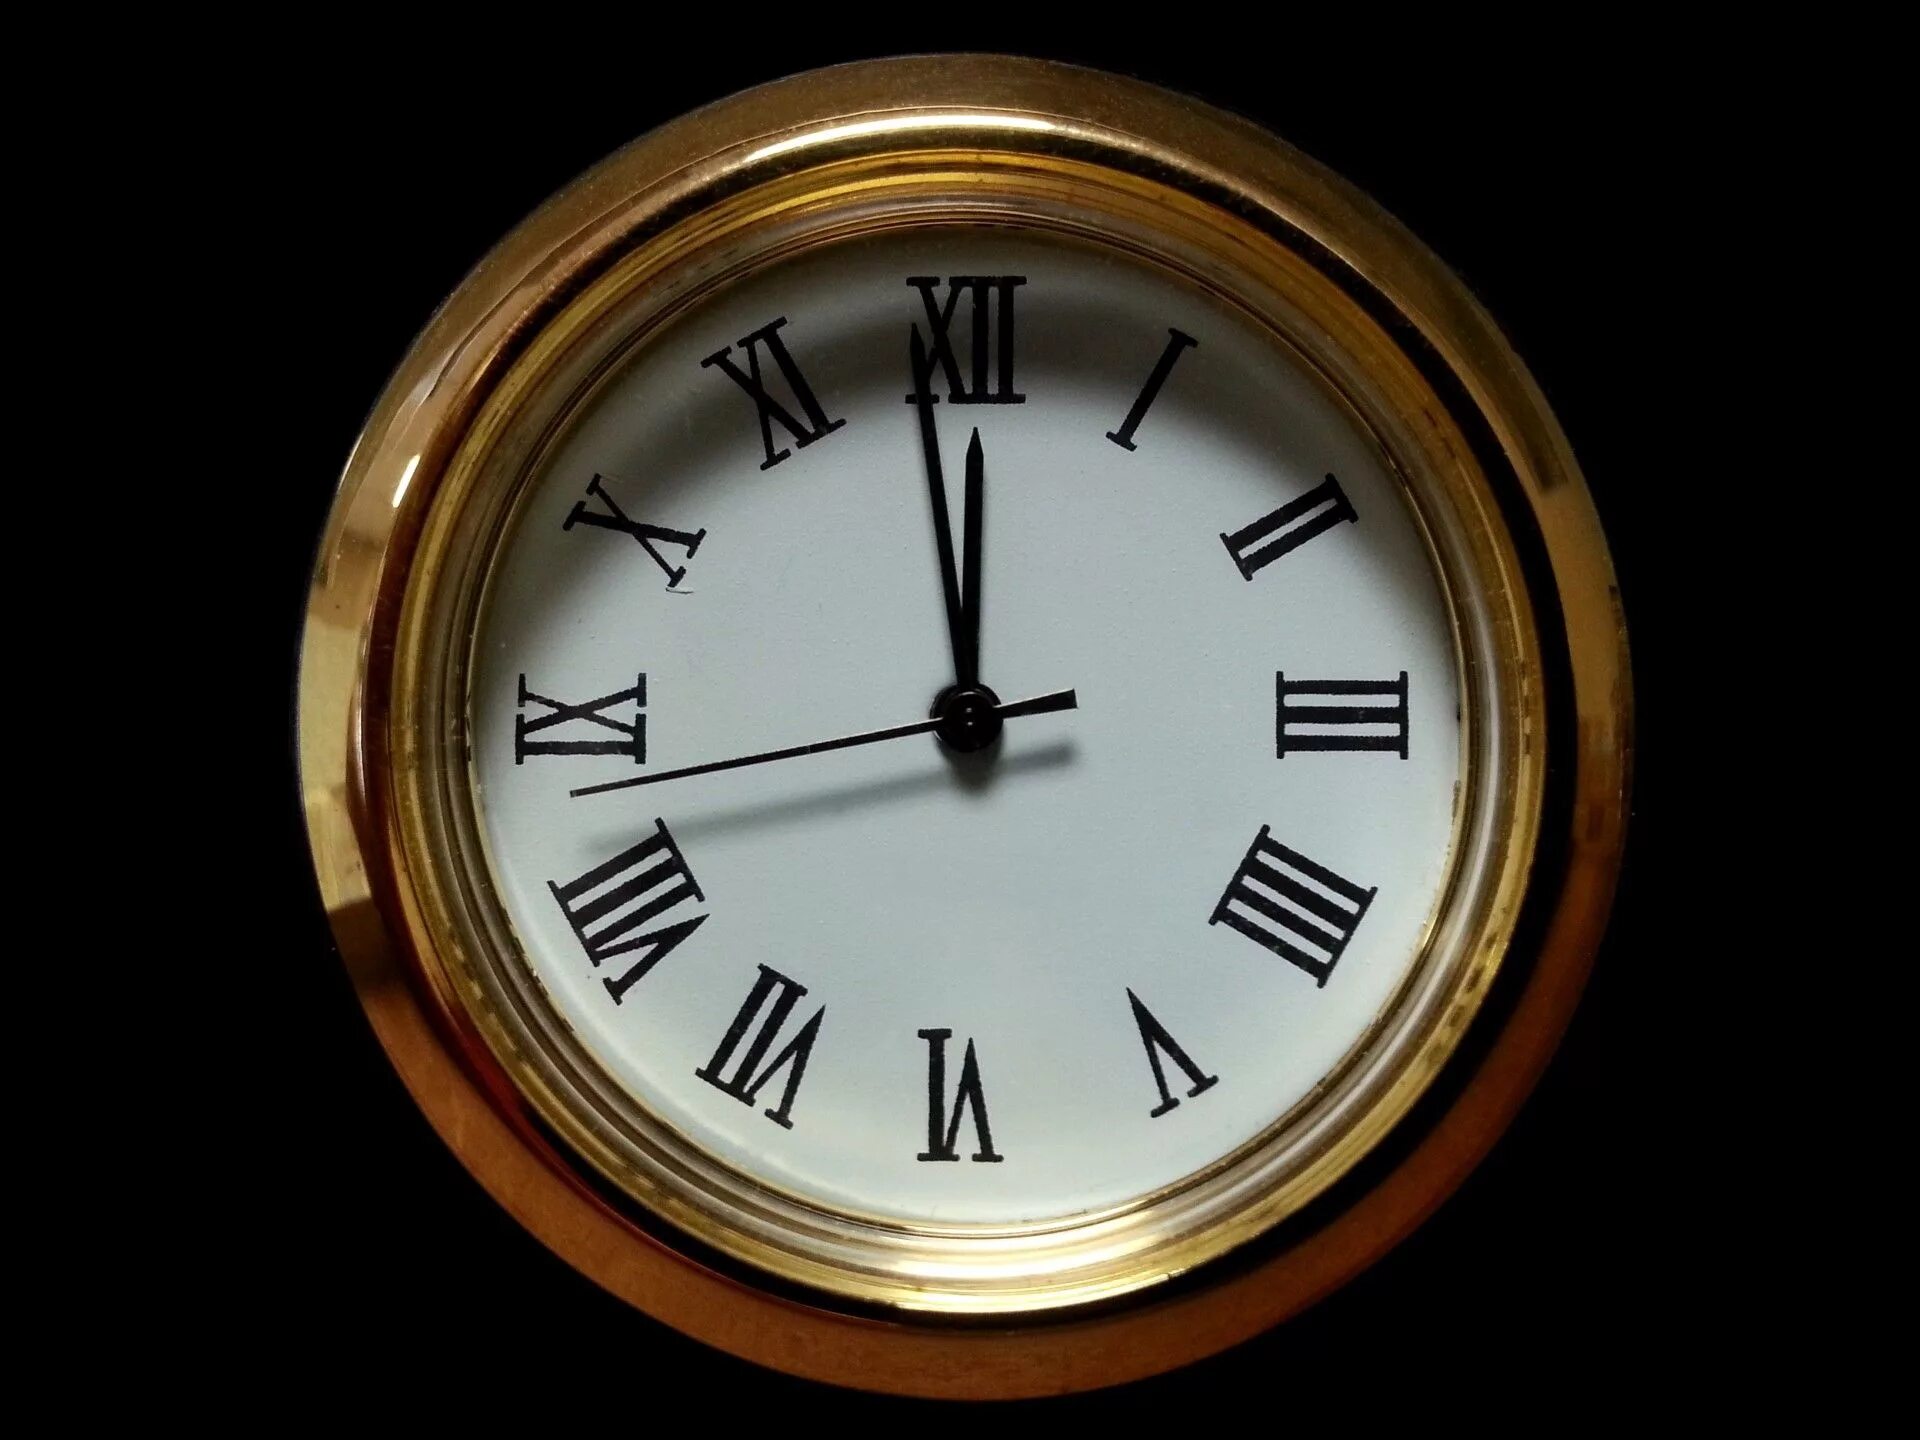 Включи показывай часы. Старинные часы. Часы полночь. Часы показывают полночь. Изображение часов.